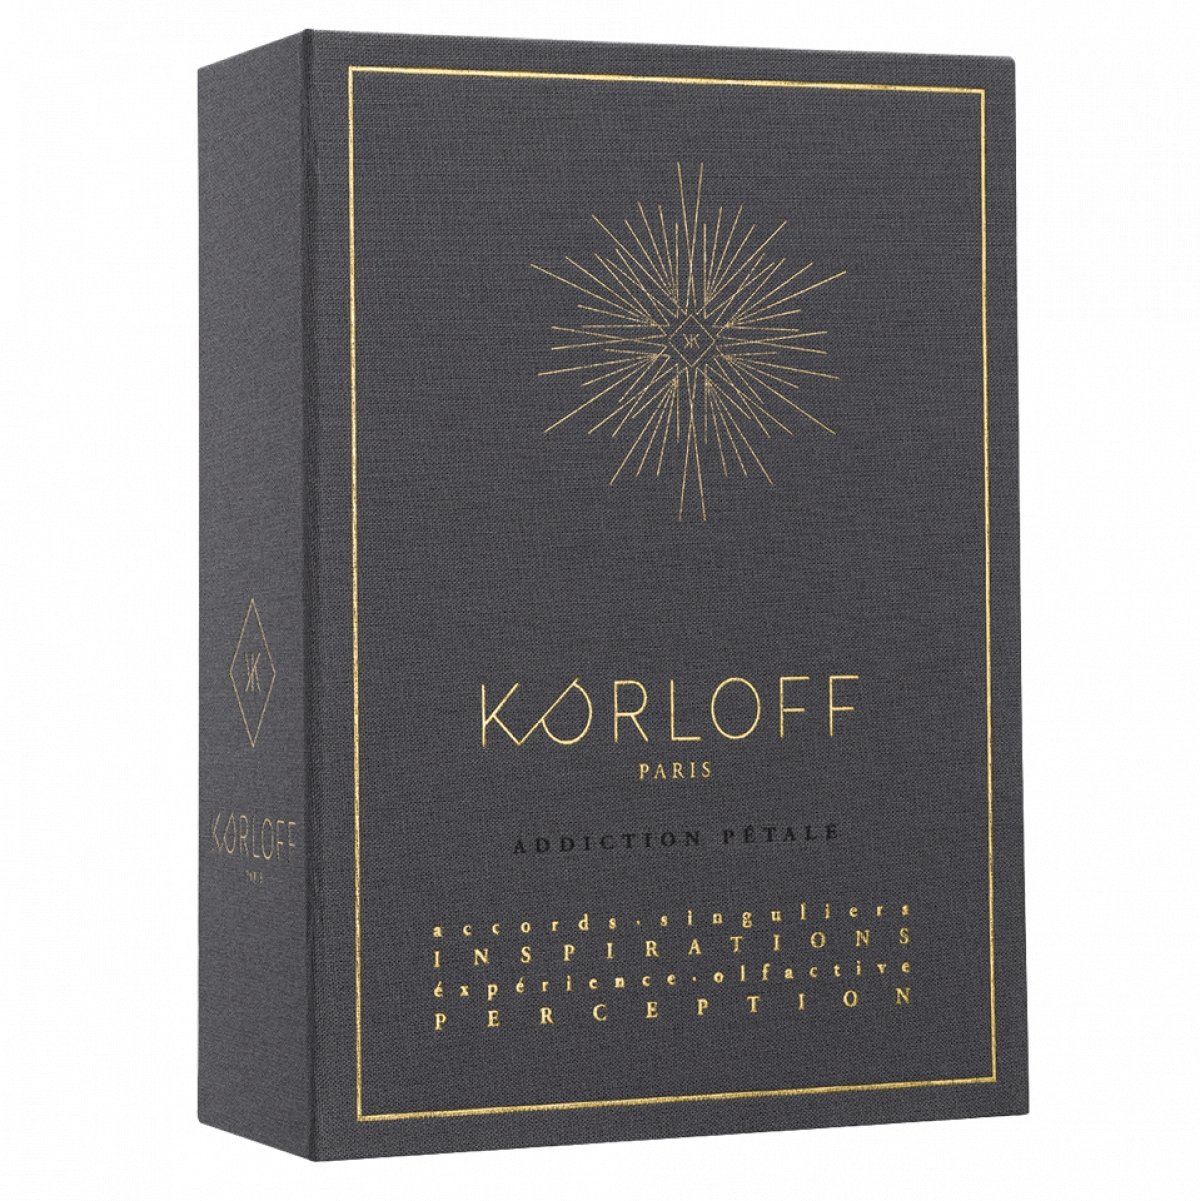 Parfum Addiction Pétale - Les Mémoires Korloff - Maison Caldeira